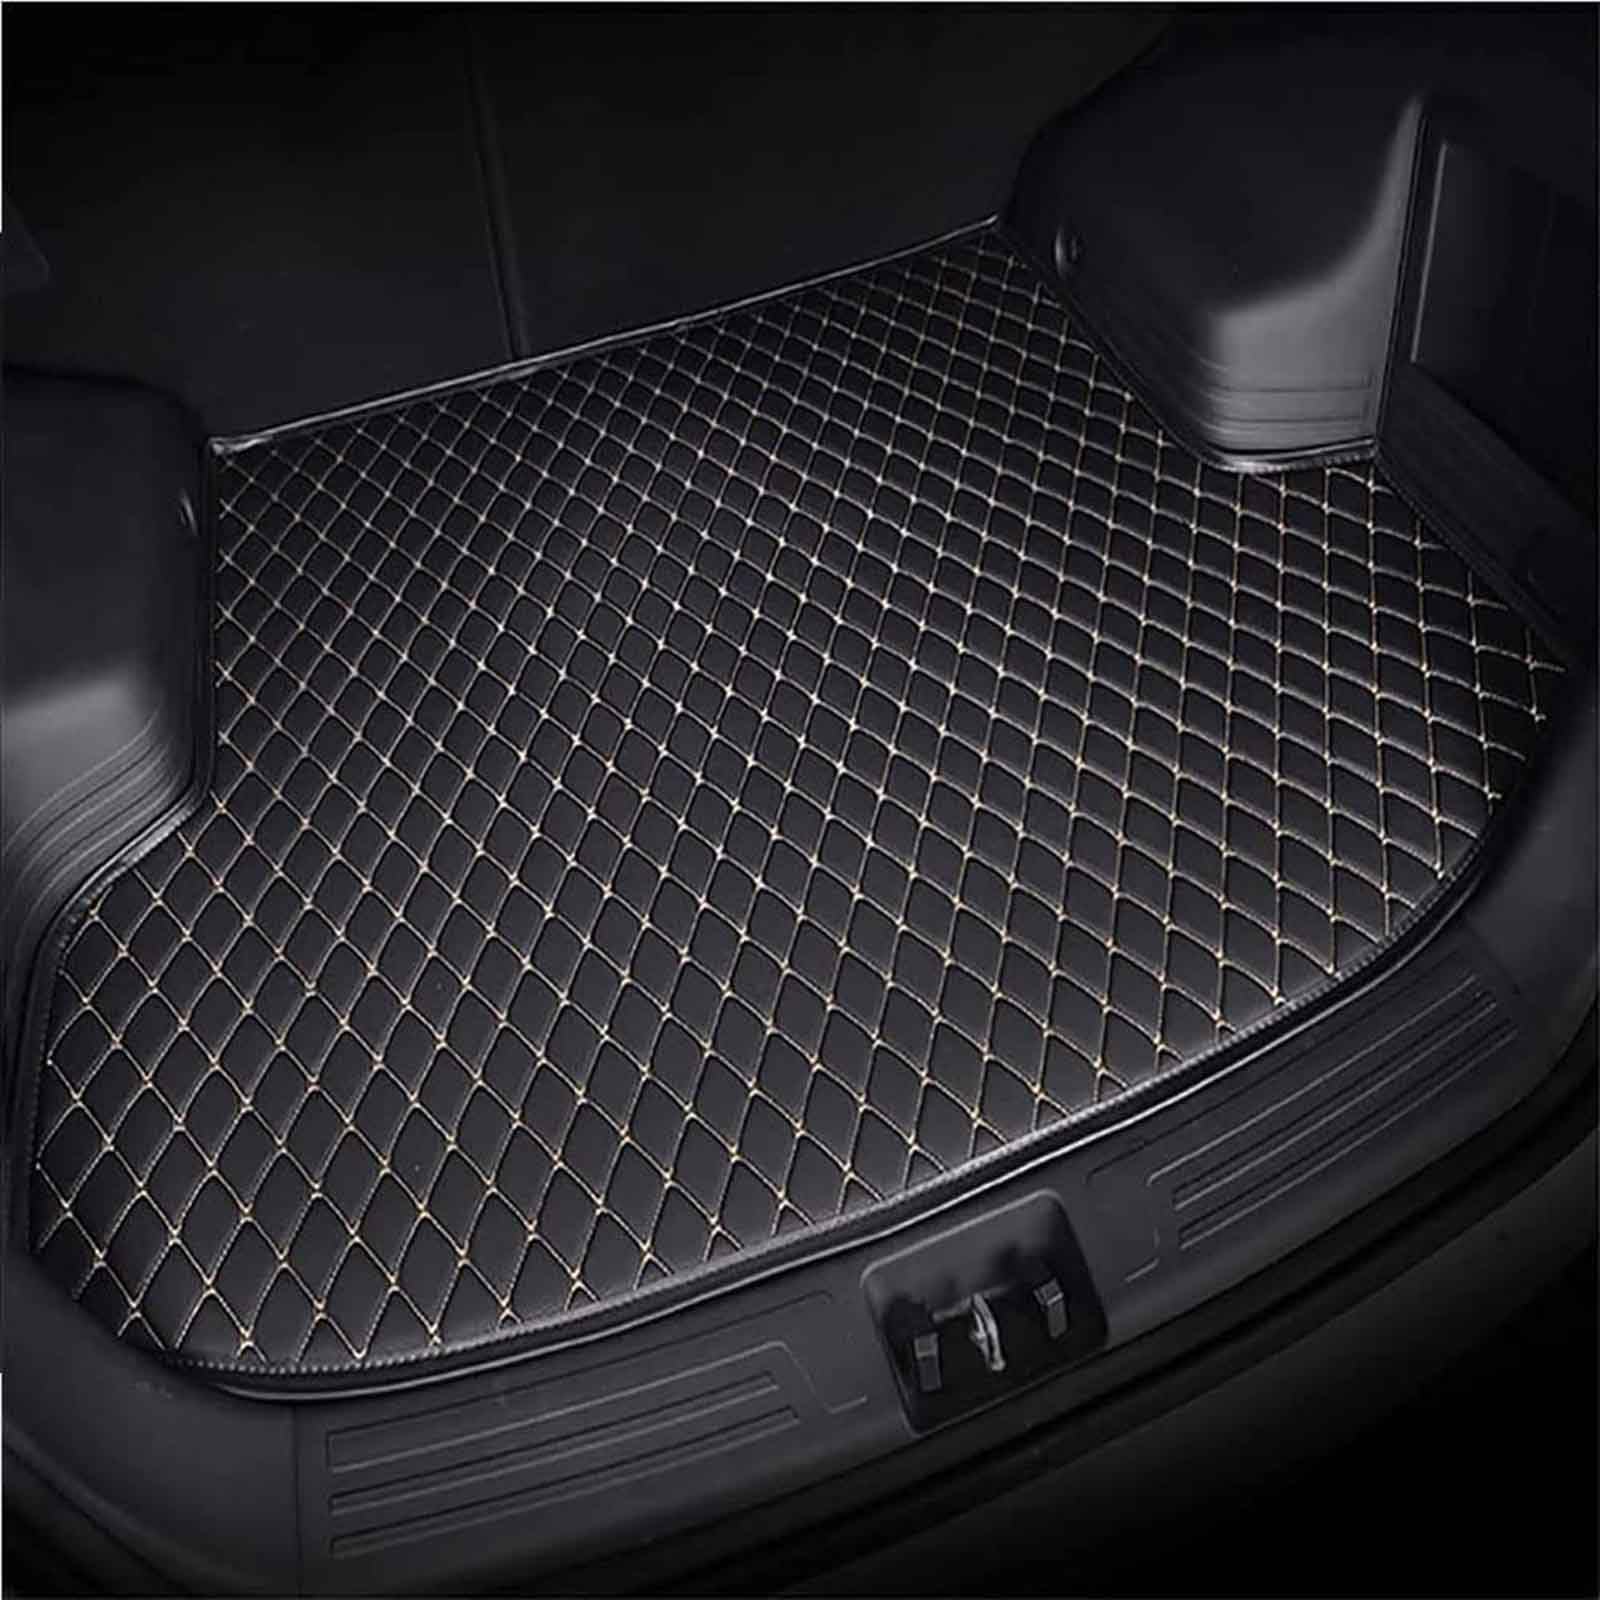 Kofferraummatte für Hon-da CR-V 2017 - Auto Leder Kofferraumwanne - Allwetter Kofferraum Schutzmatte - Wasserdicht Gepäckraumwanne - Gepäckraumeinlage, Black Beige von FERFXN